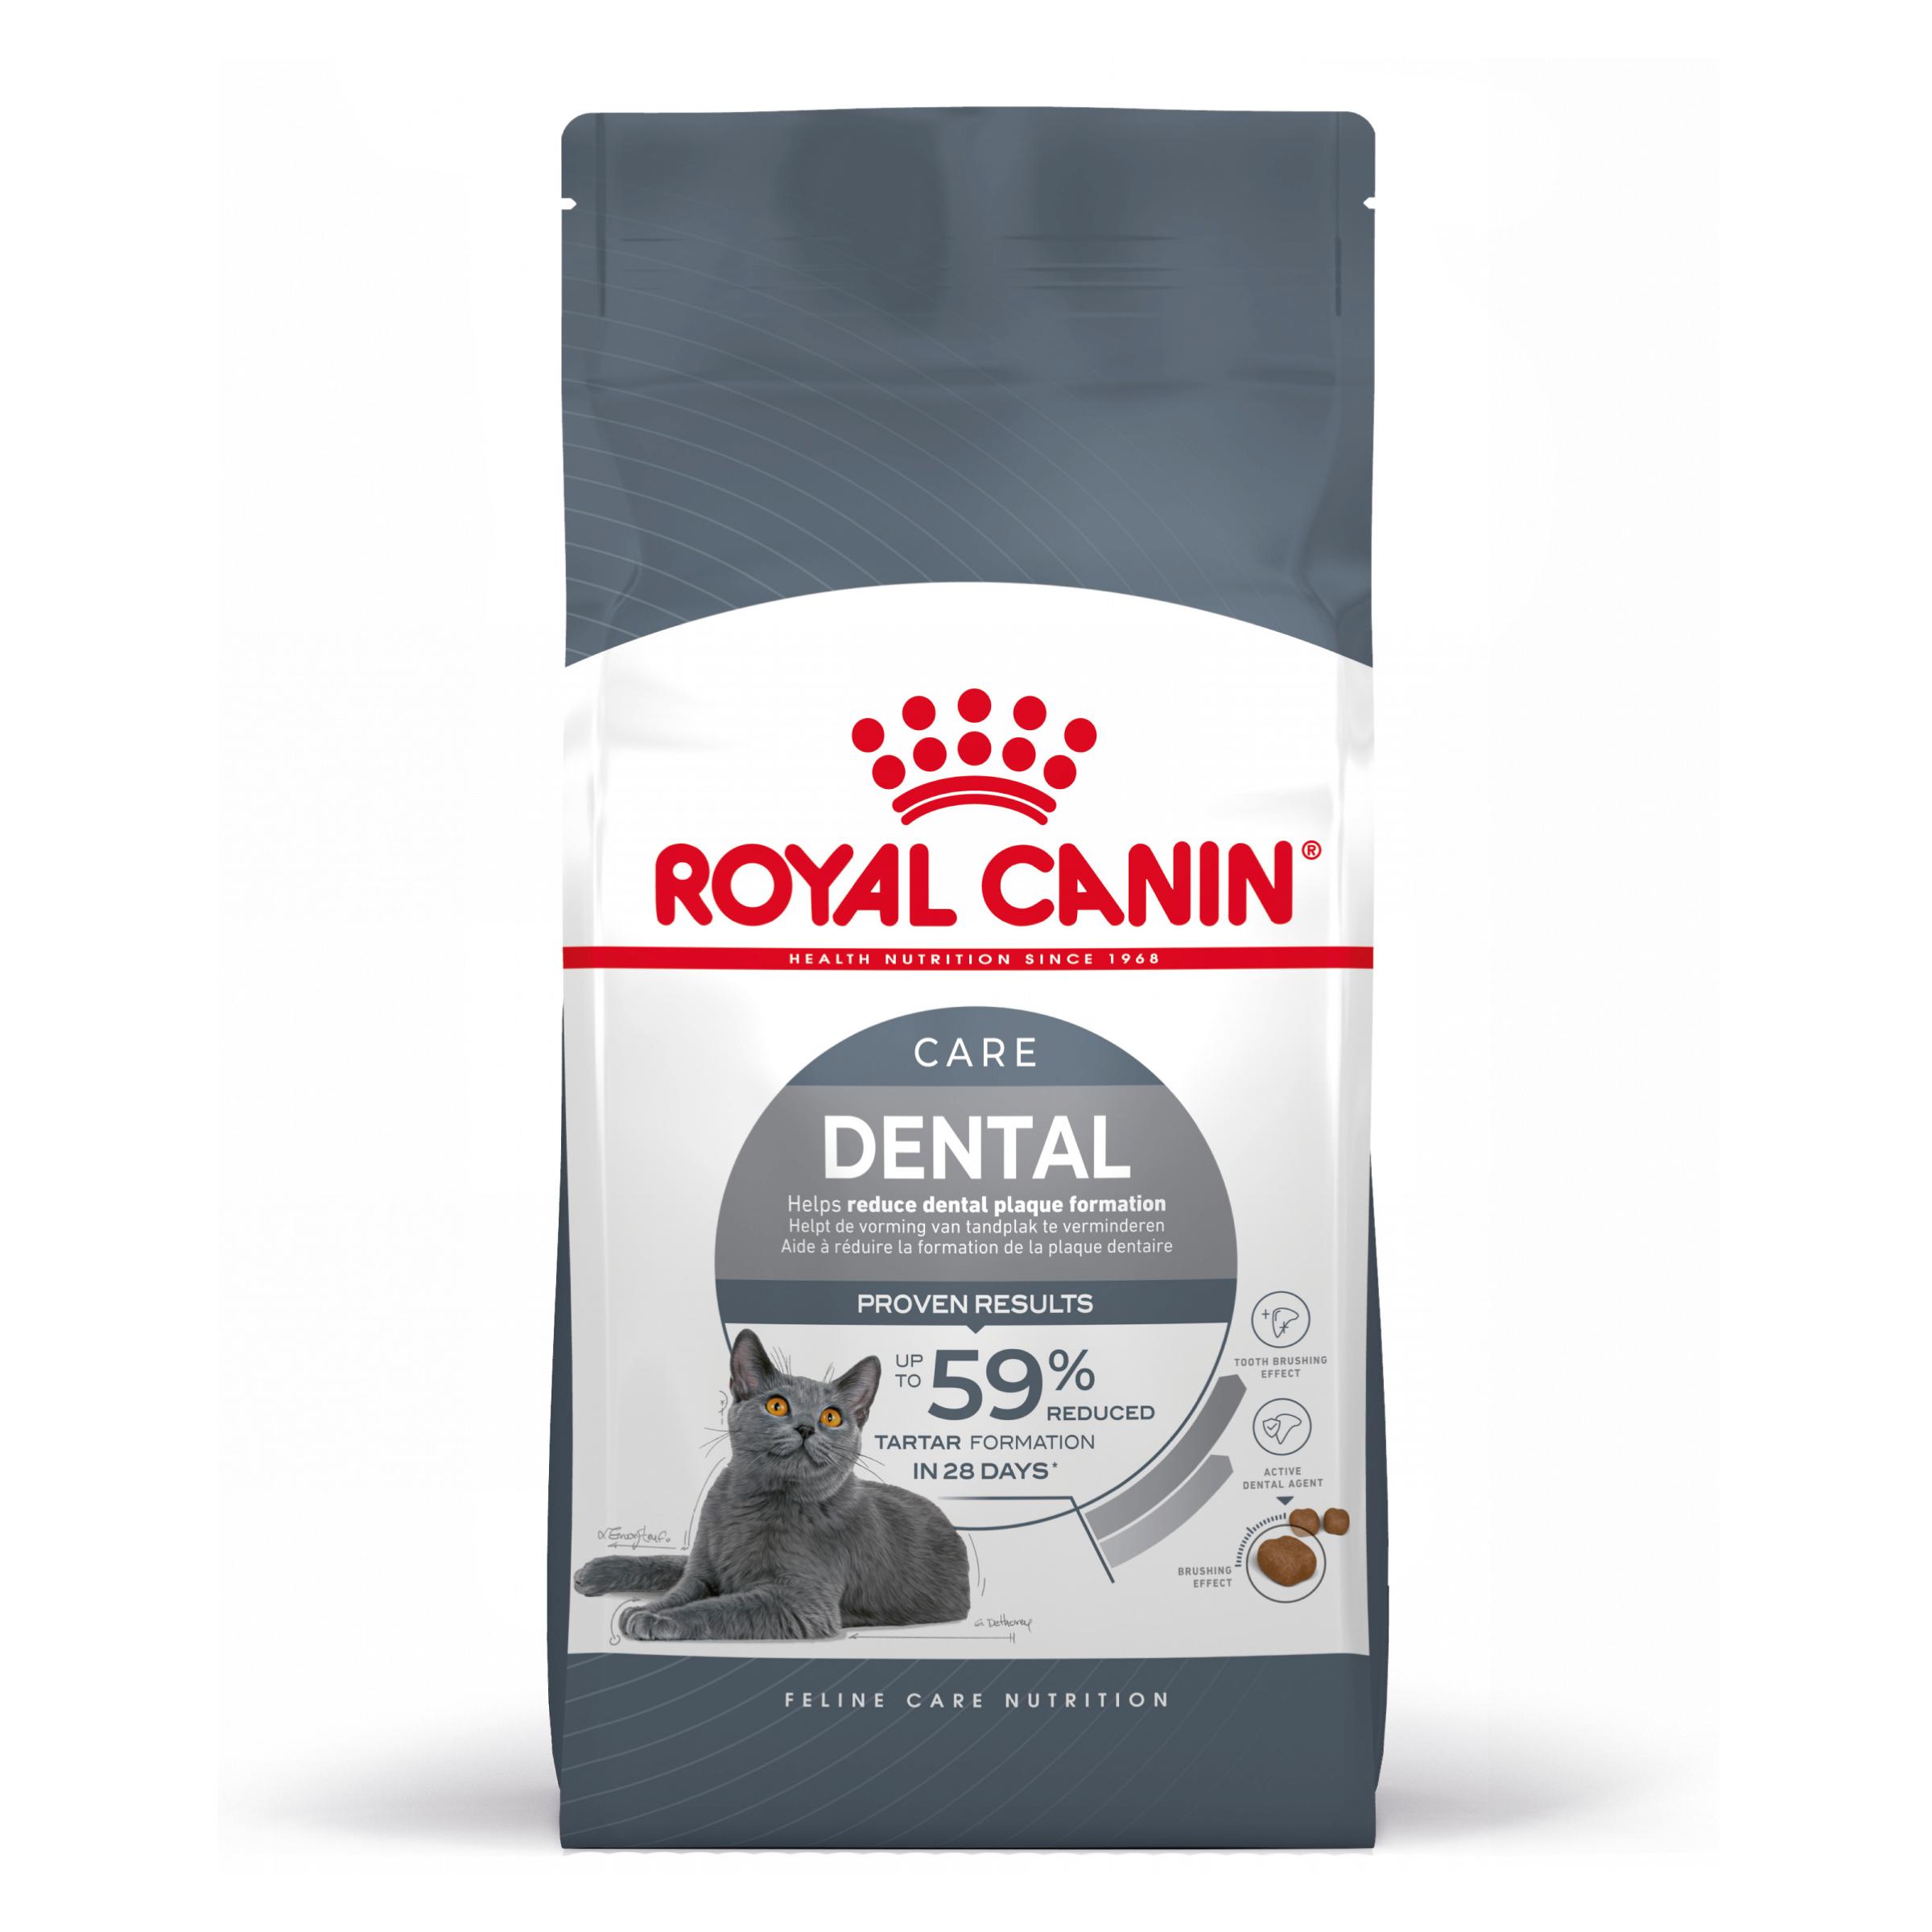 Royal Canin Oral Care - Aliment pour chats adultes. - Recommandé pour aider à réduire la formation de la plaque dentaire - 1,5kg